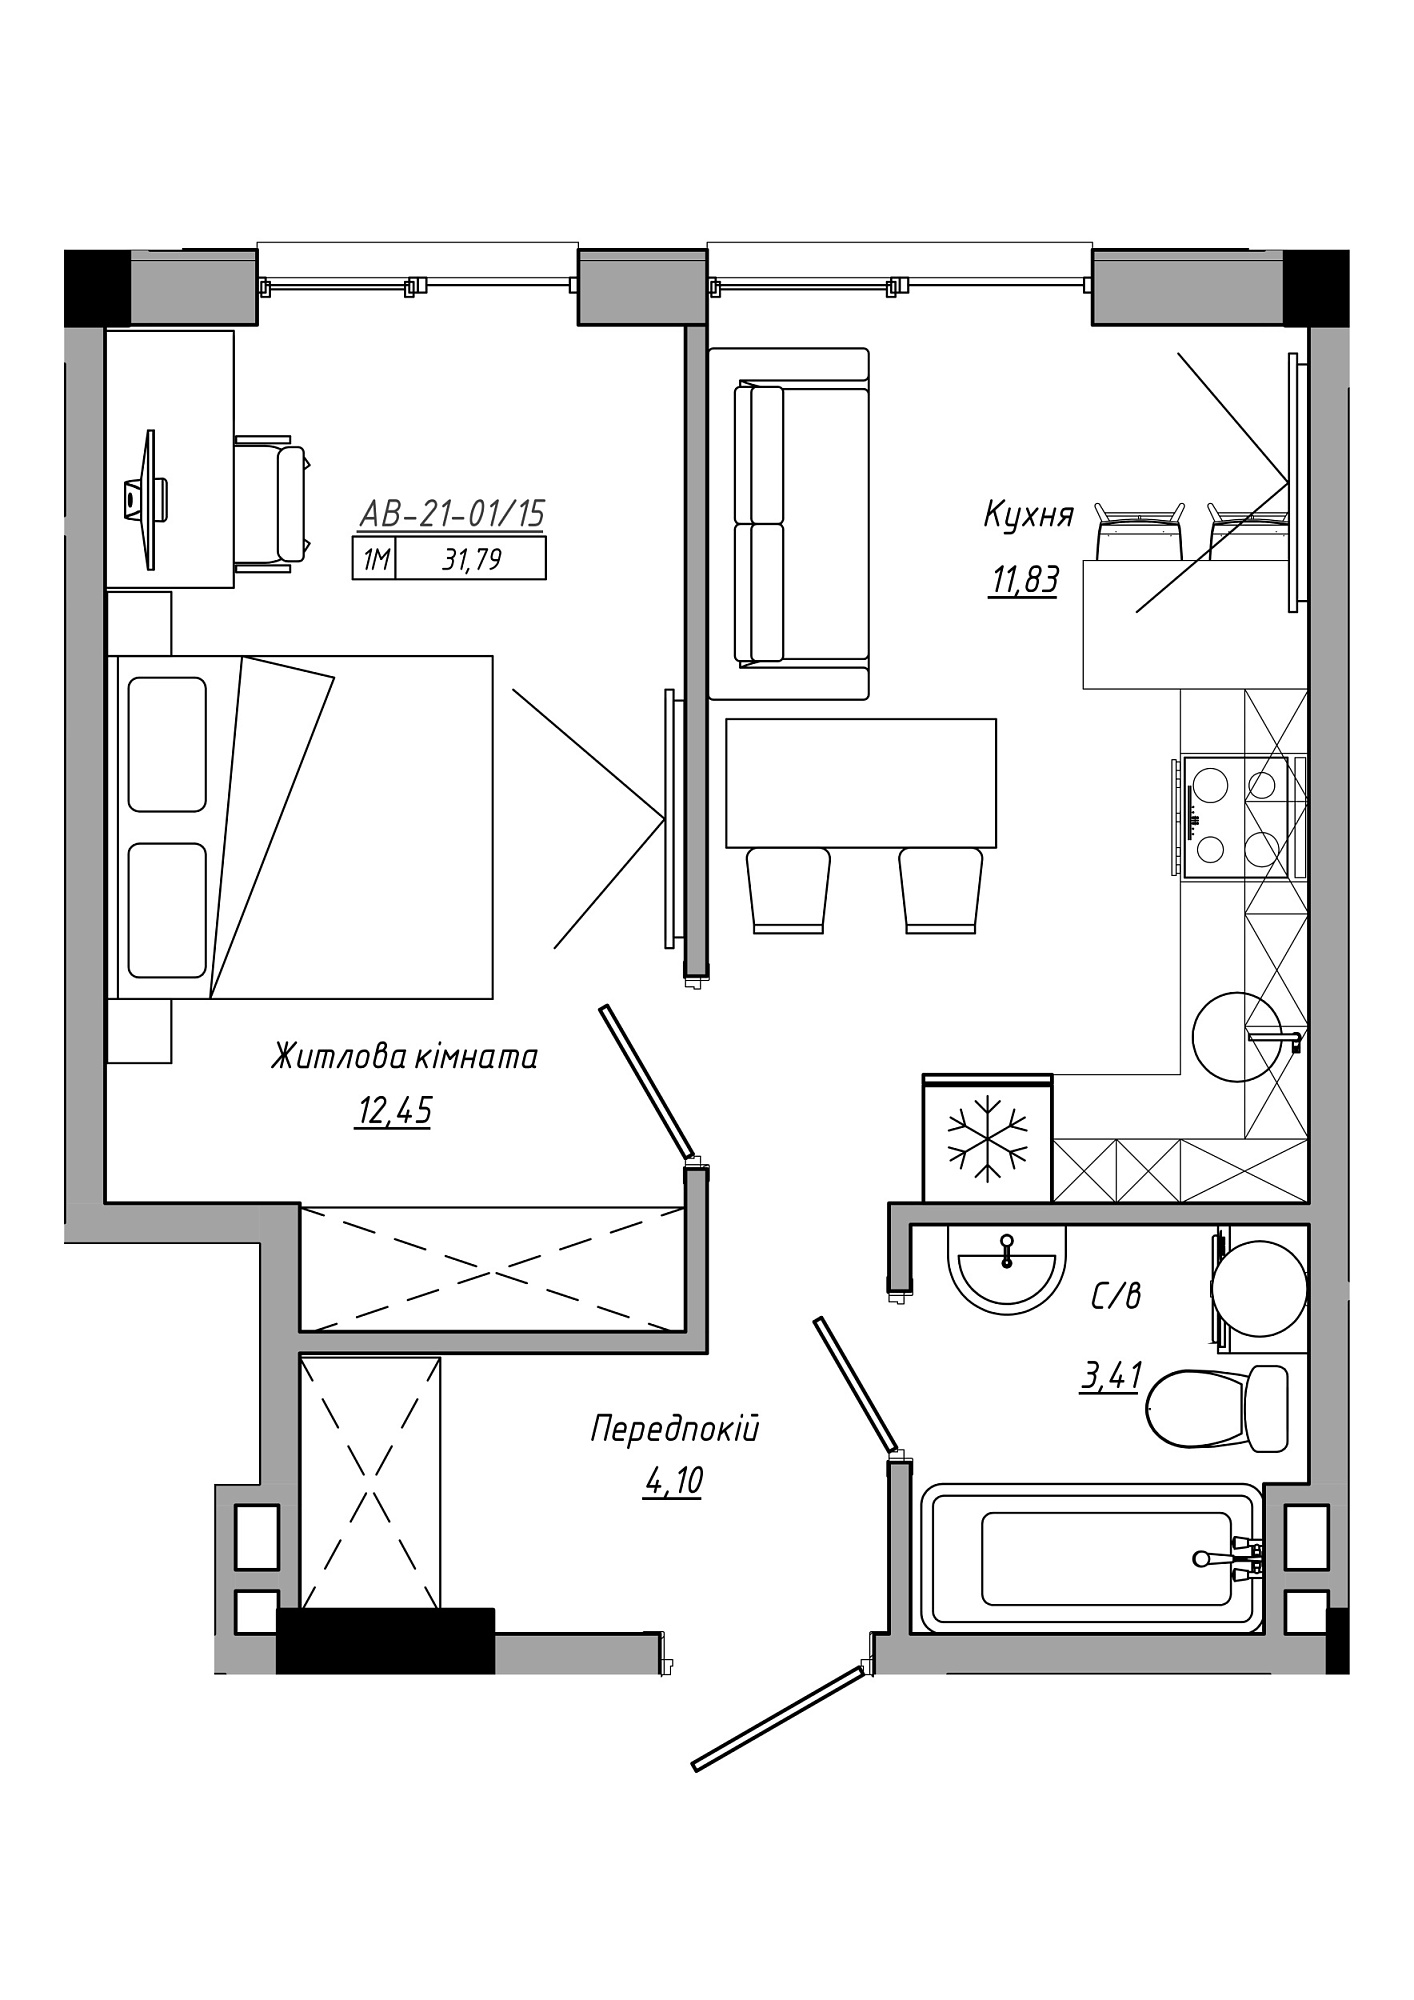 Планировка 1-к квартира площей 31.79м2, AB-21-01/00015.